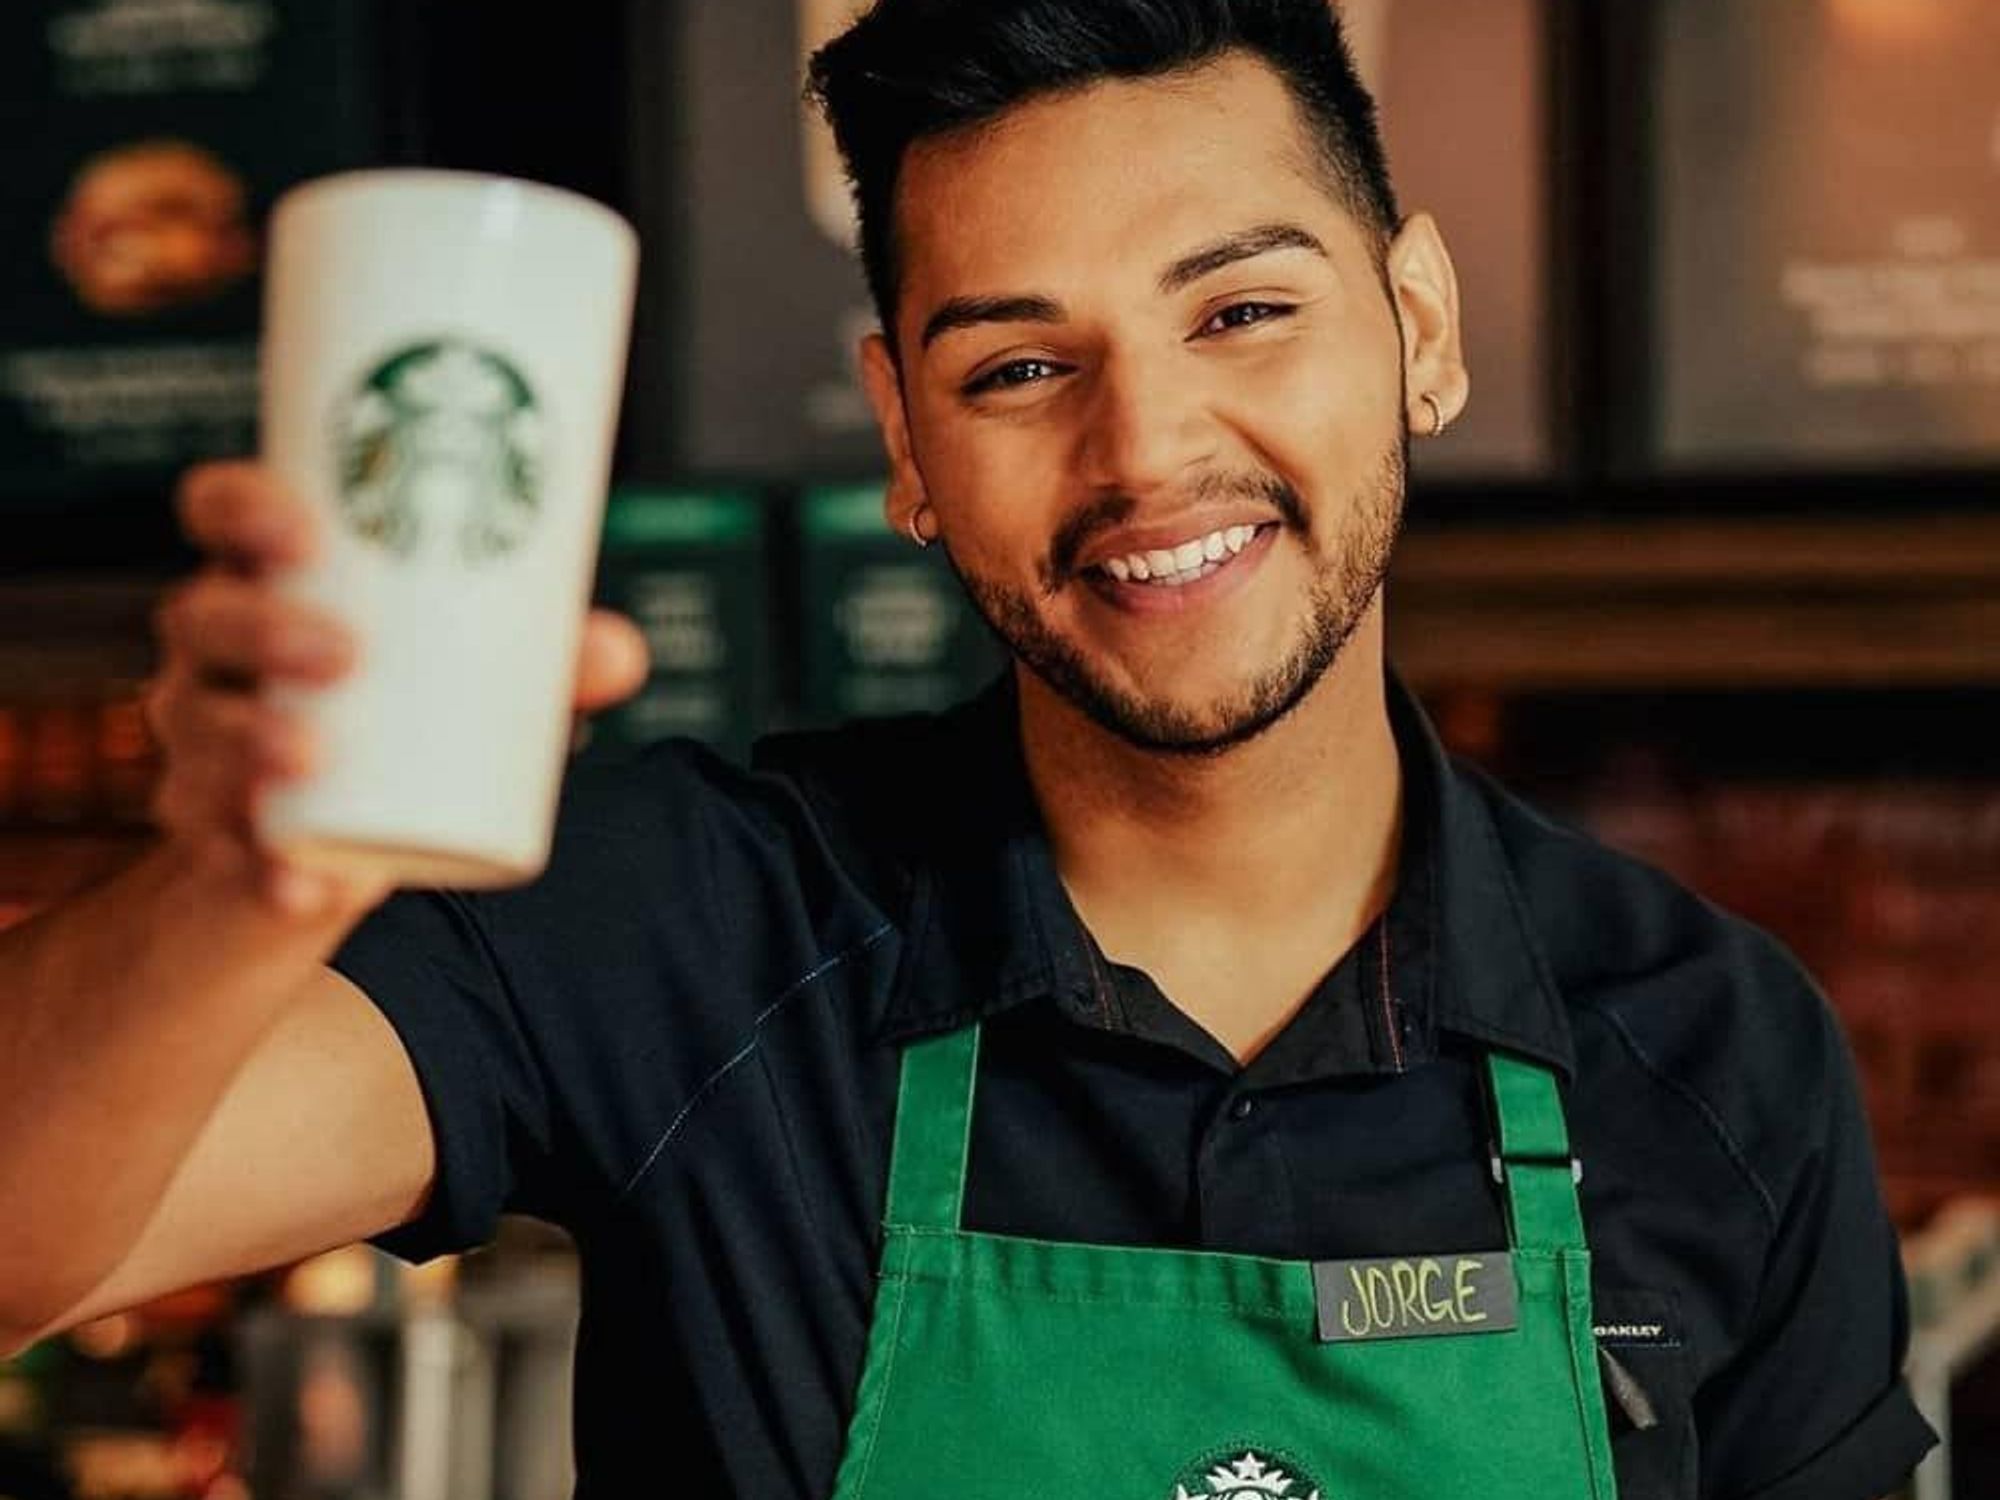 Starbucks employee